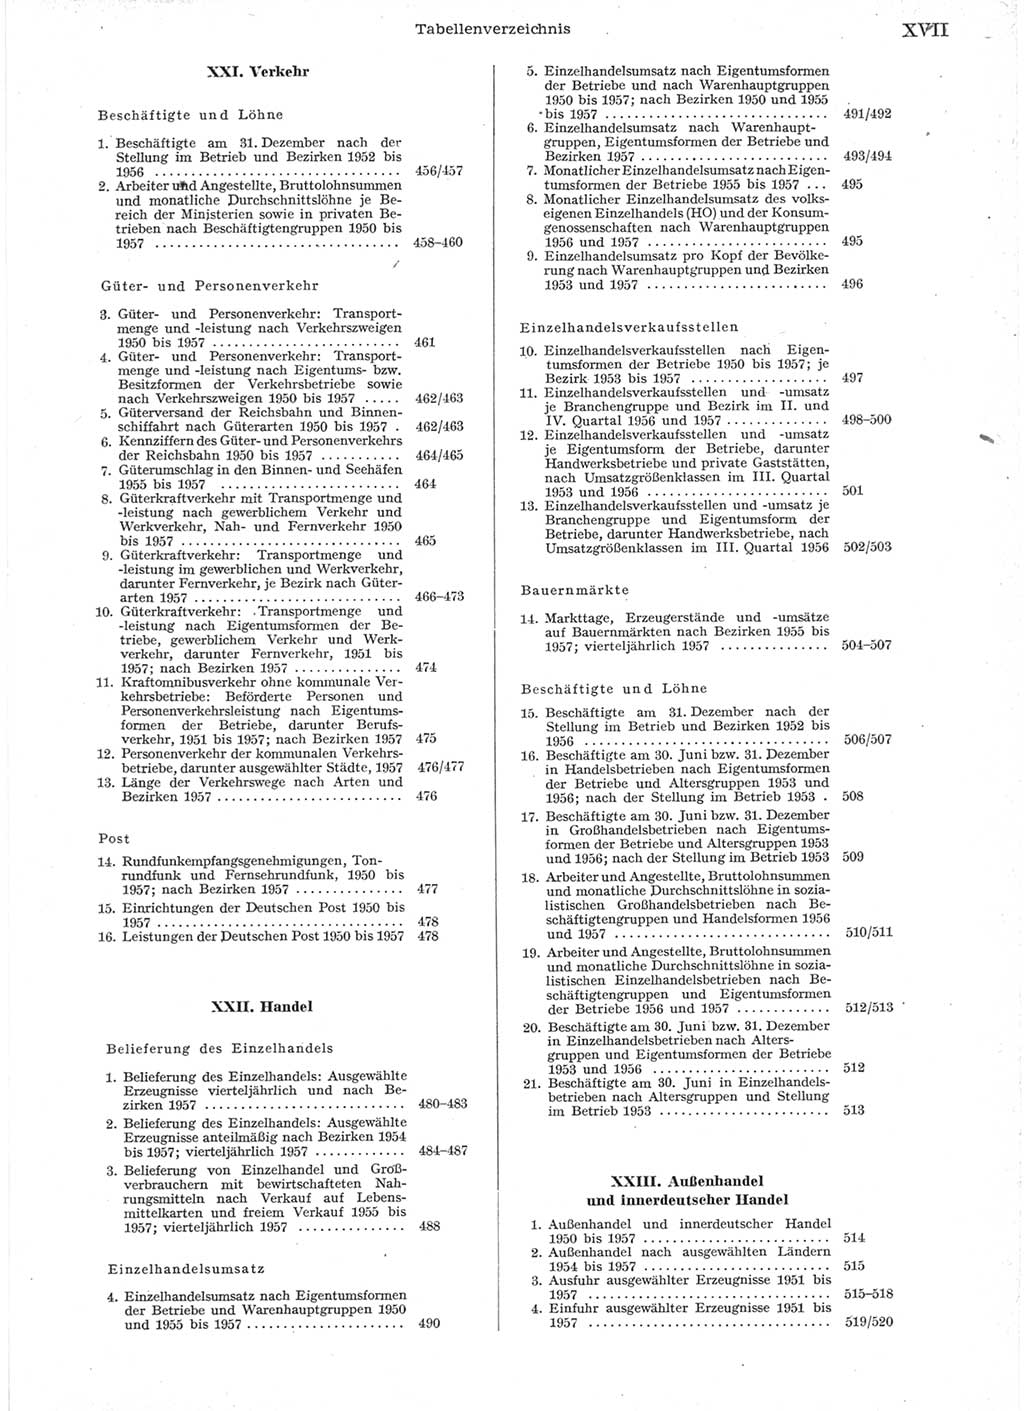 Statistisches Jahrbuch der Deutschen Demokratischen Republik (DDR) 1957, Seite 17 (Stat. Jb. DDR 1957, S. 17)